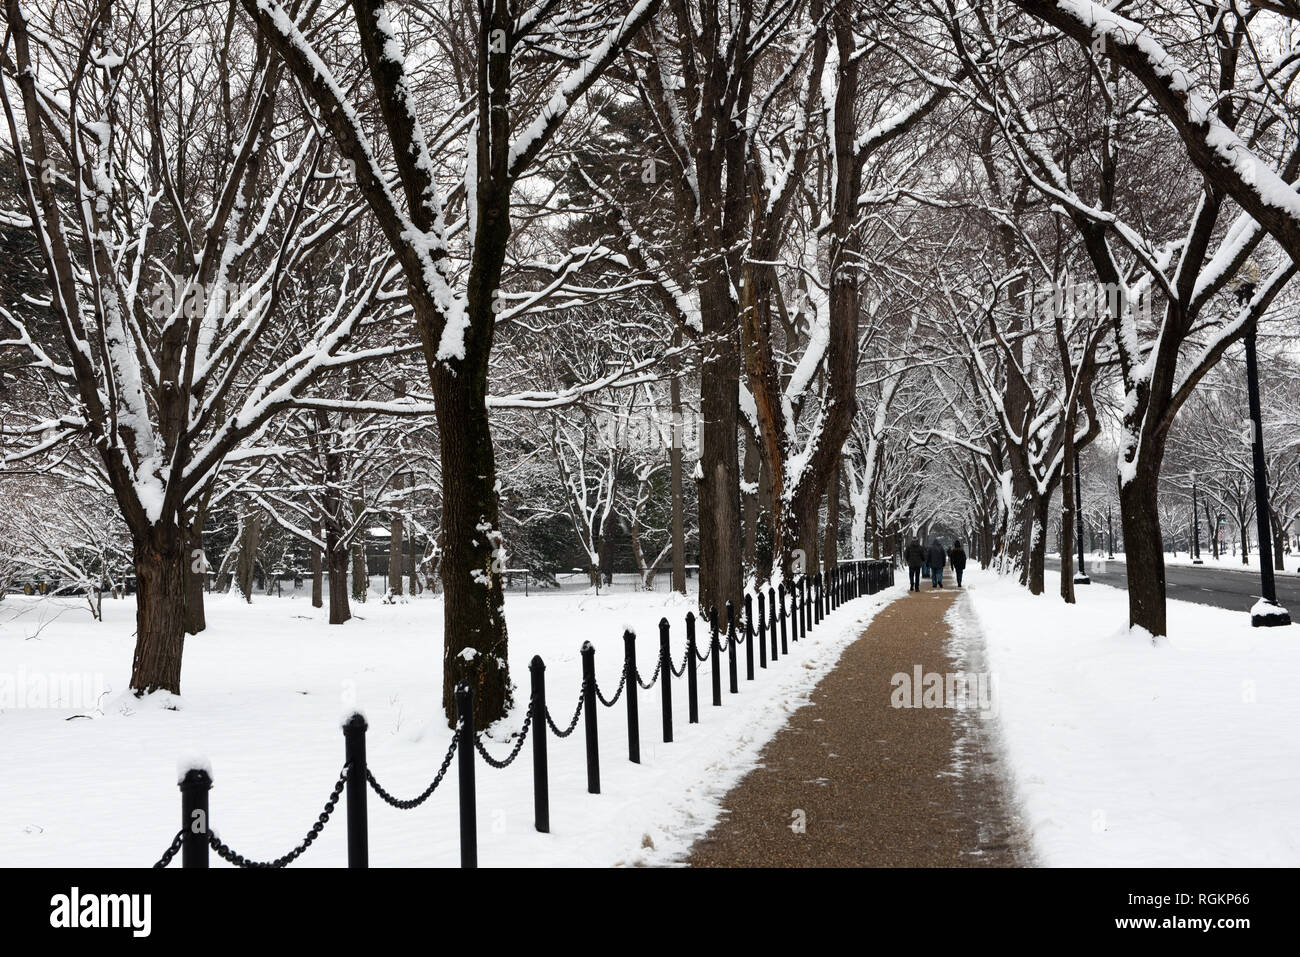 WASHINGTON, DC - frisch gefallener Schnee auf Bäumen, die einen Gehweg entlang des Lincoln Memorial Reflecting Pool in Washington DC säumen. Stockfoto